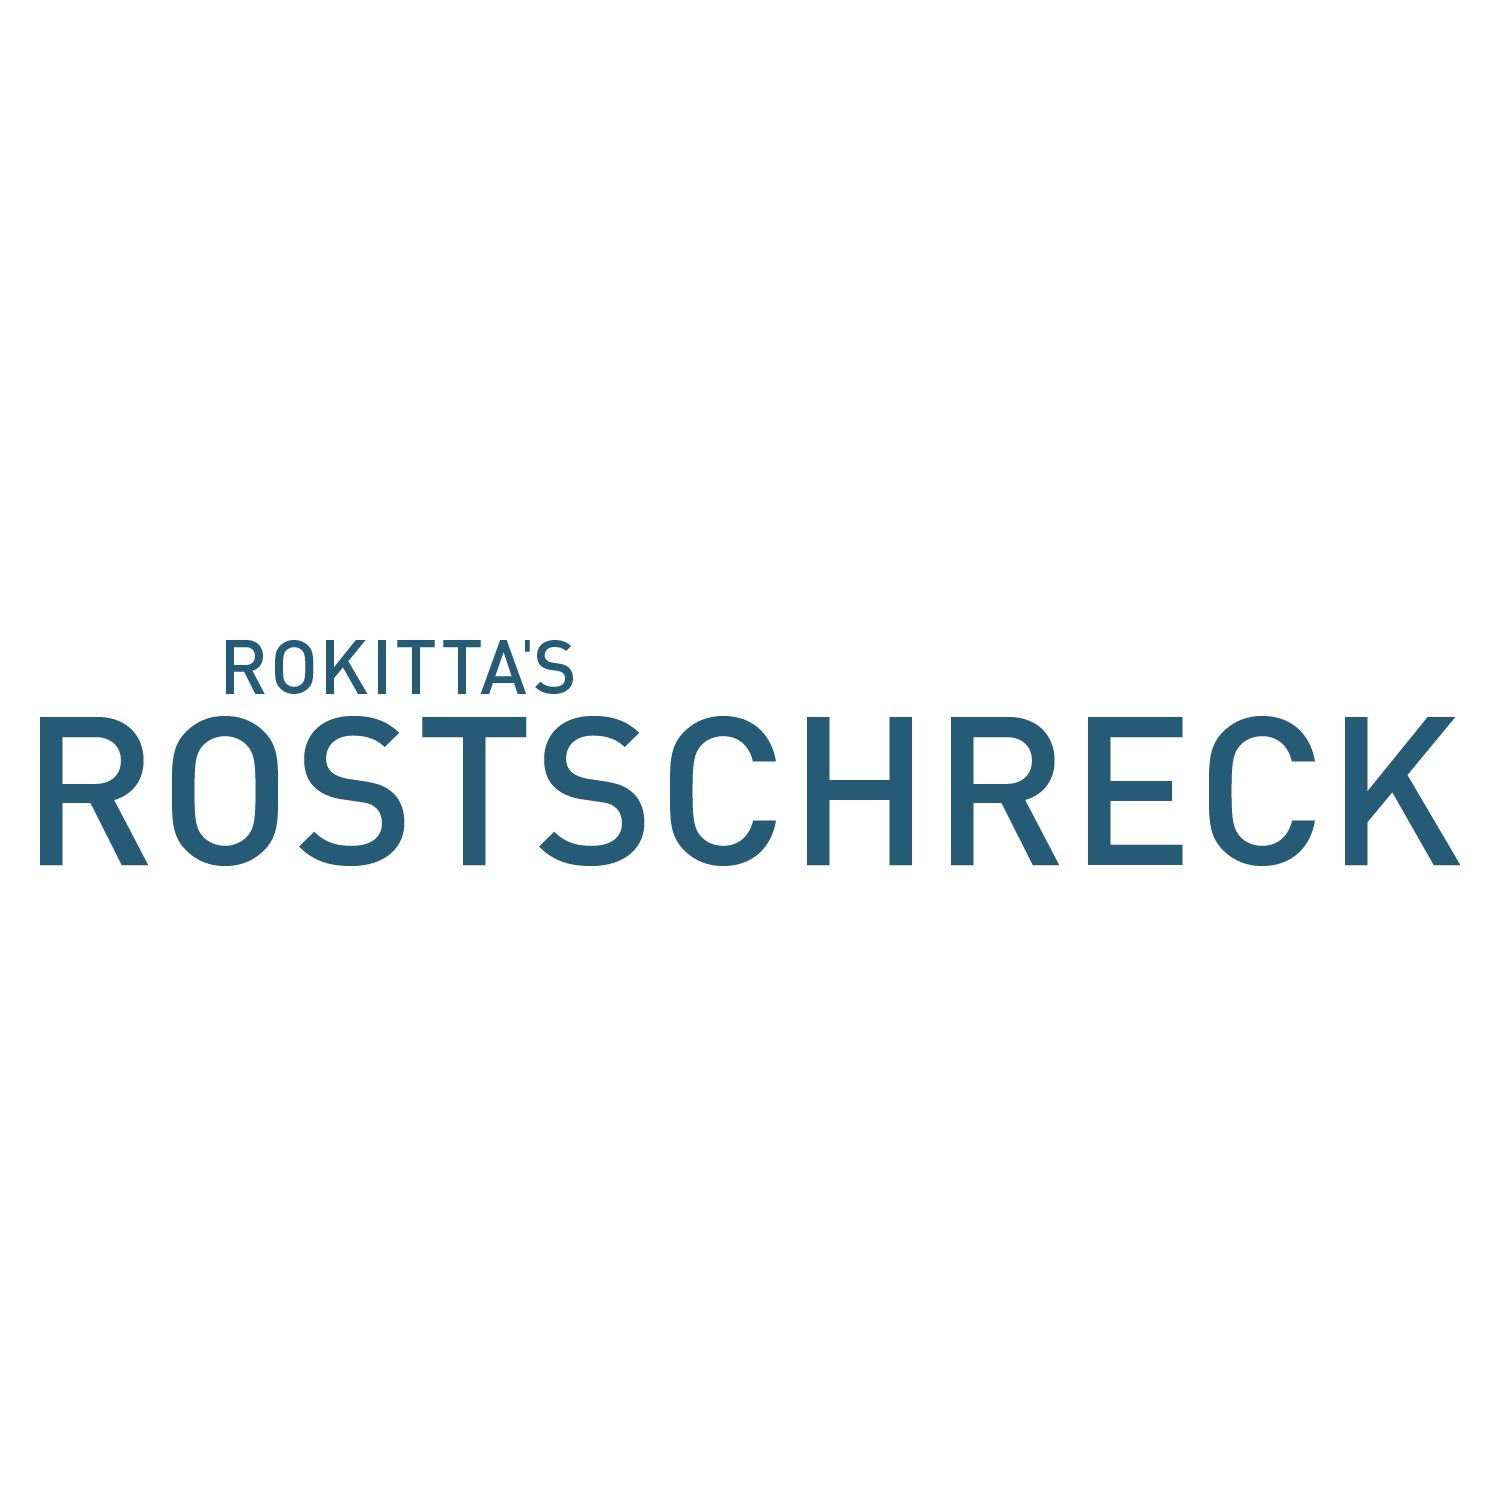 Rokitta's Rostschreck